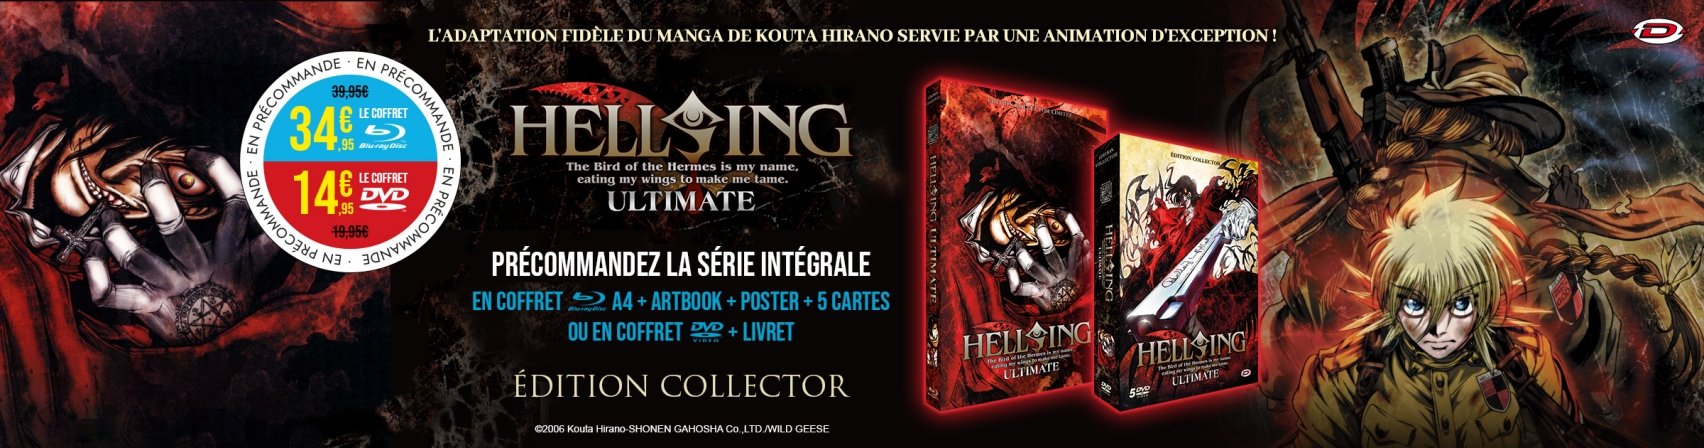 Précommandez Hellsing Ultimate en coffret BR A4 ou DVD collector